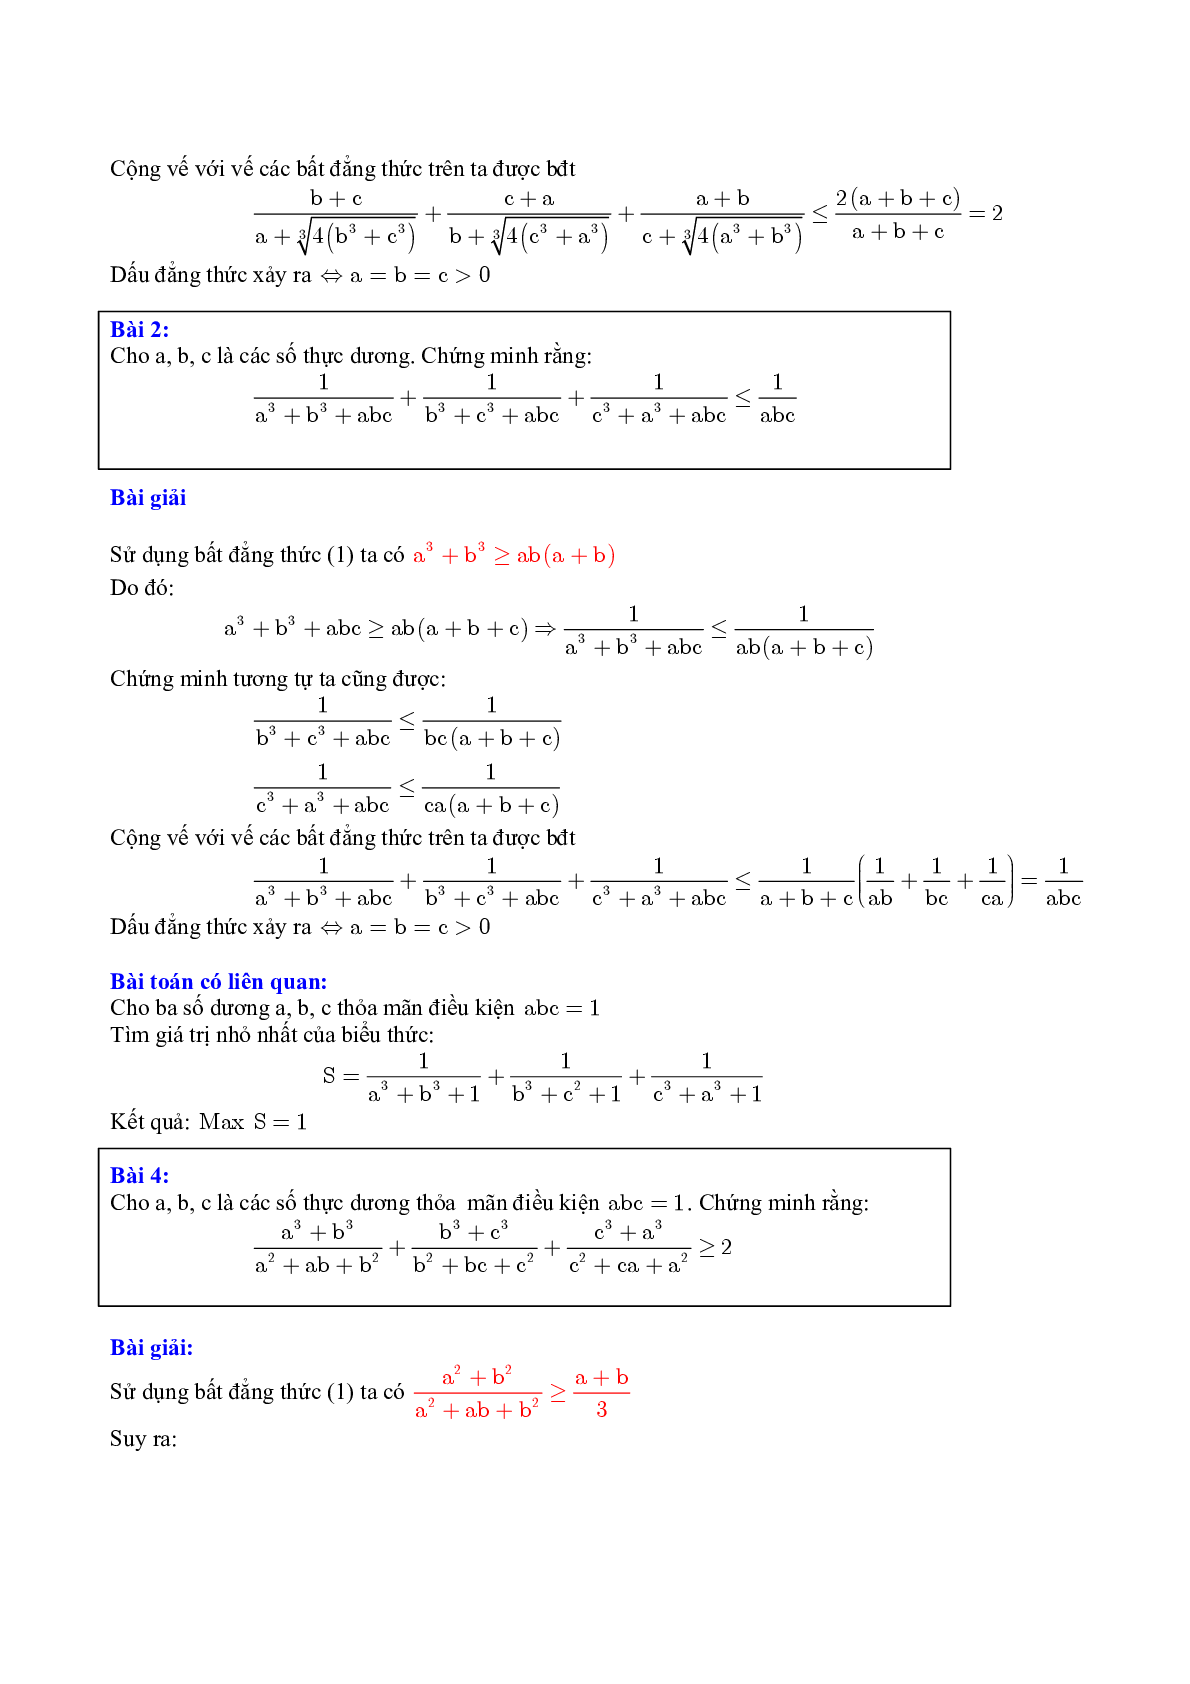 Một số kỹ thuật chứng minh bất đẳng thức hay nhất (trang 9)